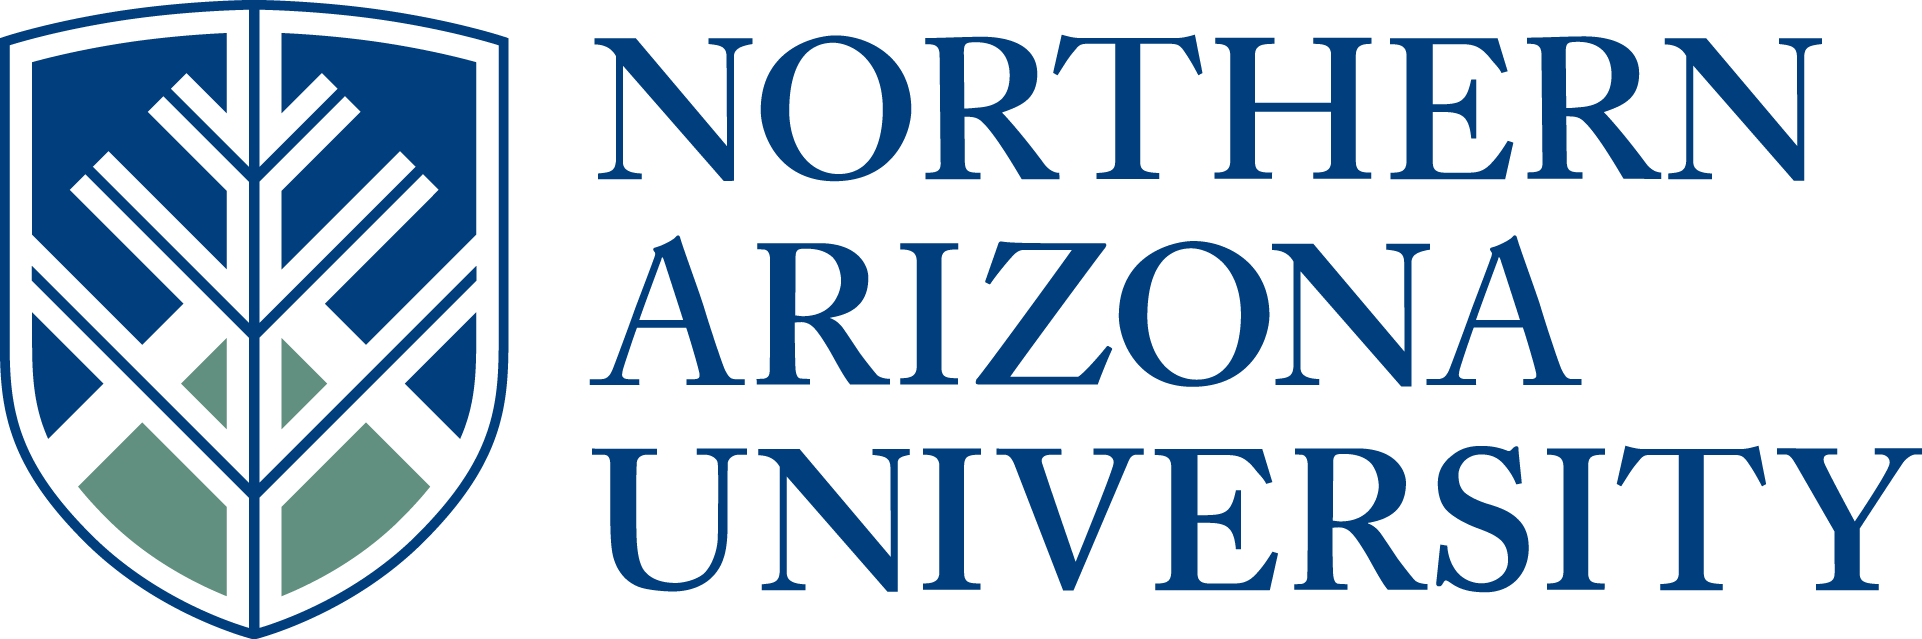 Arizona Logo - 2016 DLIAward Recipient - Northern Arizona University - OLC